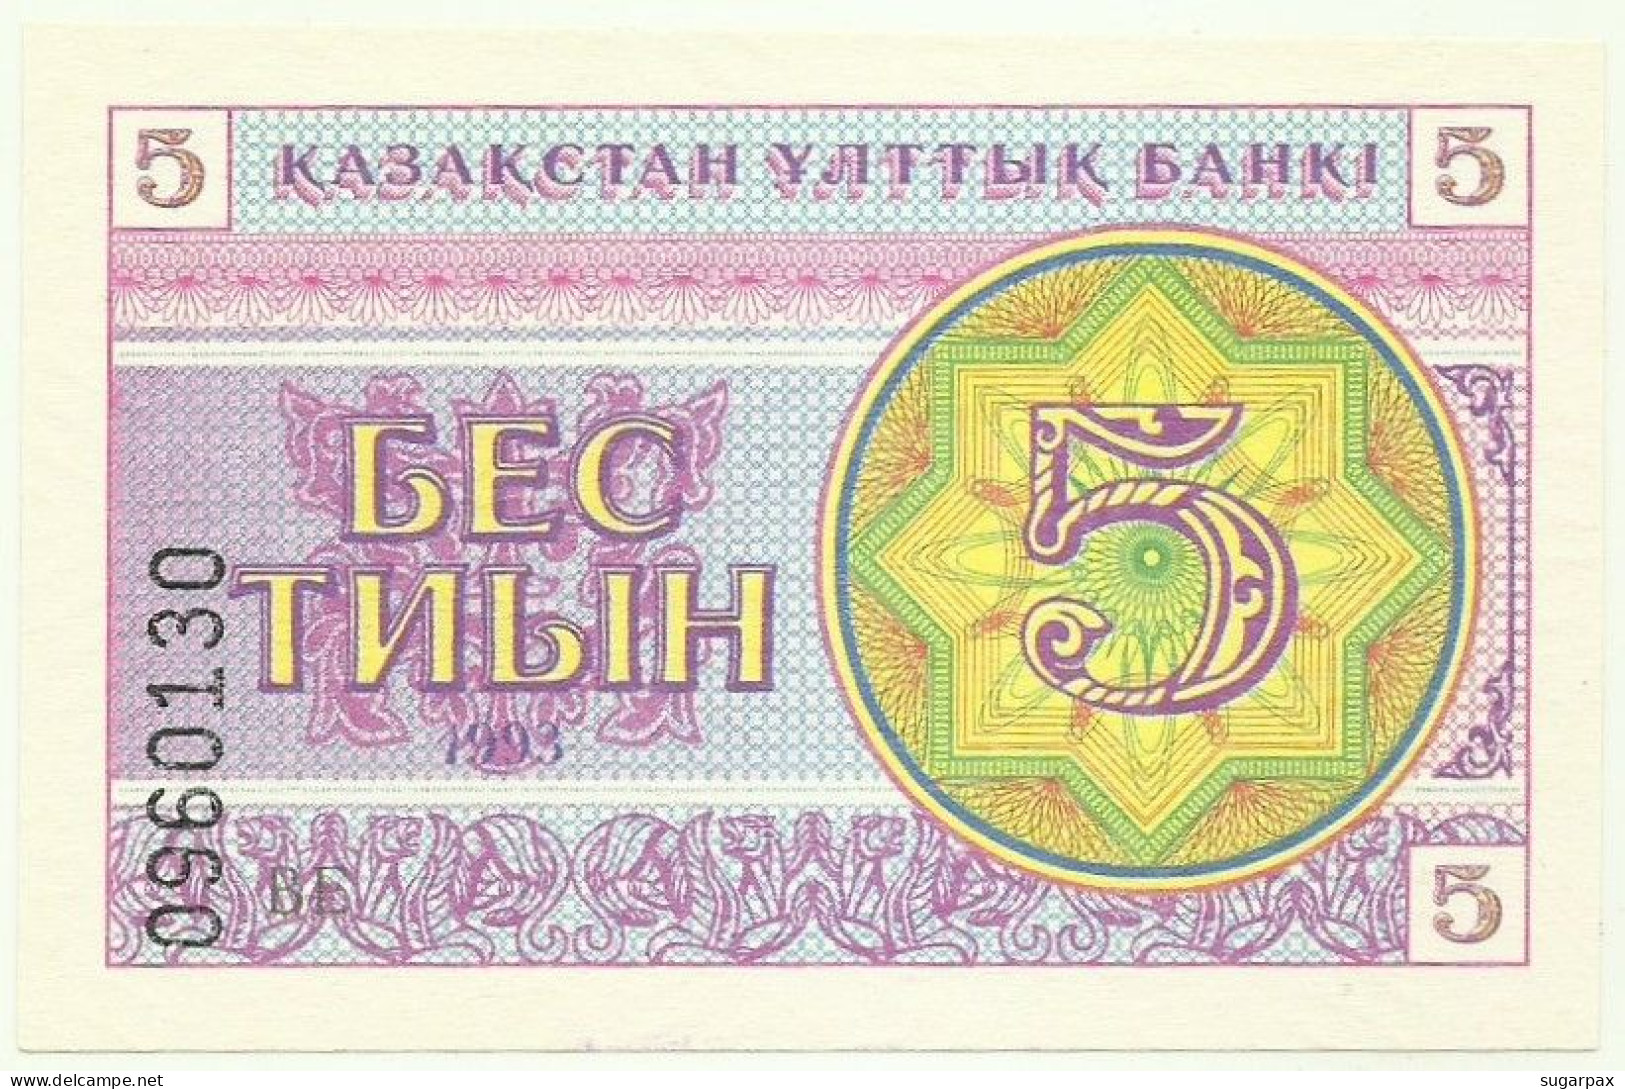 KAZAKHSTAN - 5 Tyin 1993 - Pick 3.a - Unc. - LOW Serial # Position - Wmk Snowflake Pattern - Kazachstan